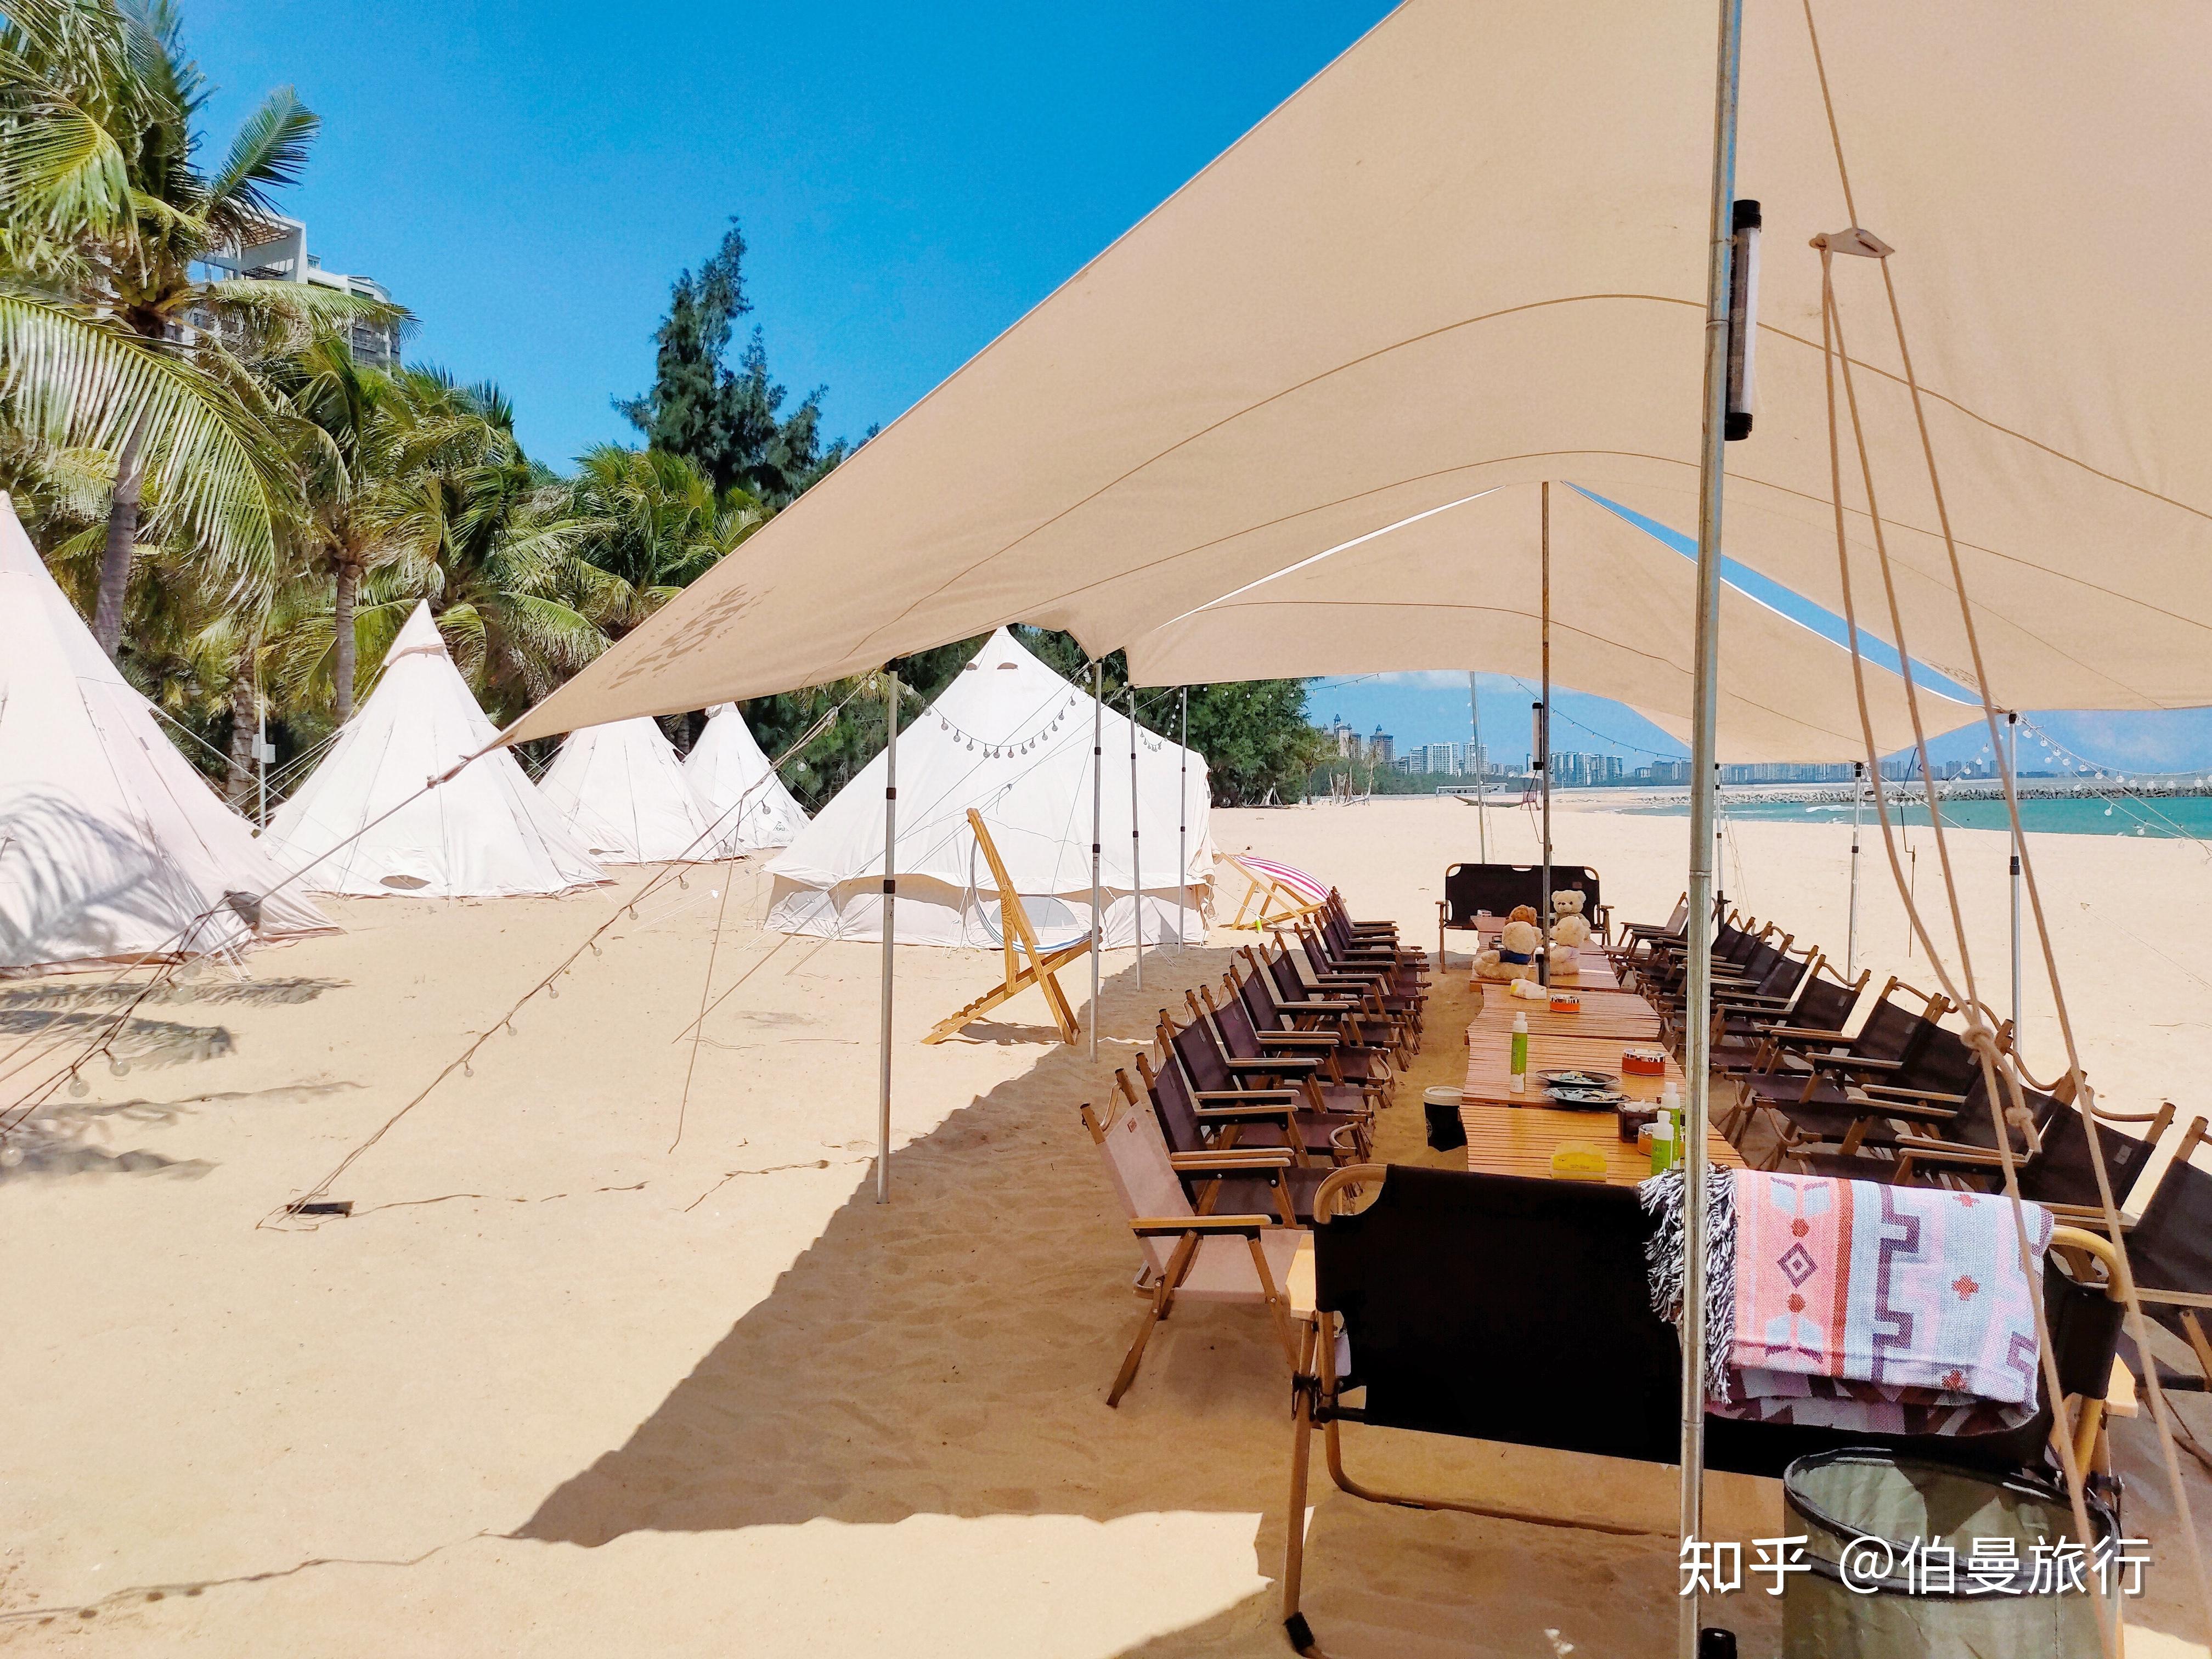 来海南三亚露营️ 最贴近城市生活的海边沙滩露营体验 尽在伯曼奢野